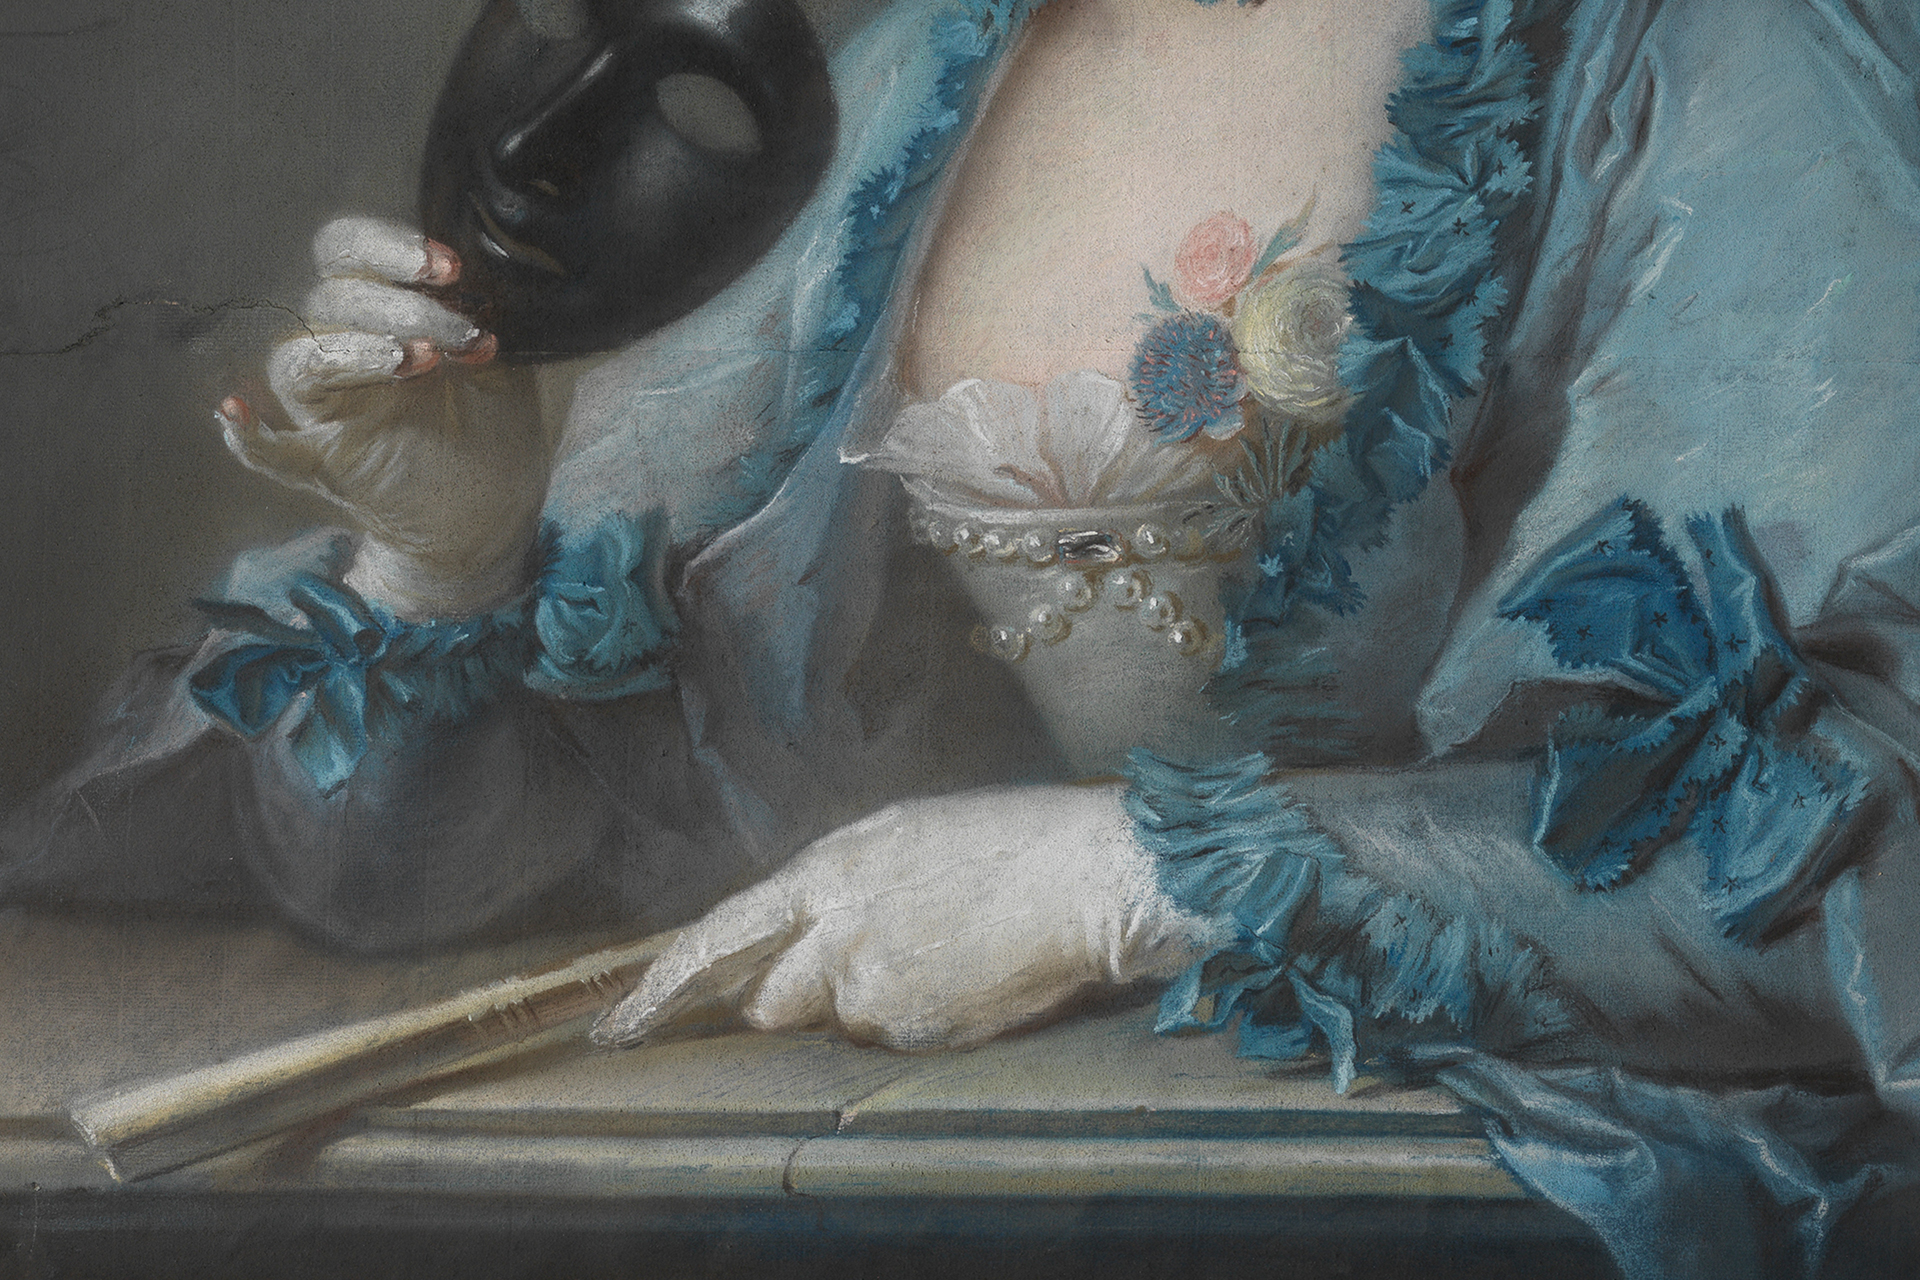 Detailausschnitt des Porträts von Madame Royer. Zu sehen sind Teile ihres Kleides, ihre Handschuhe, eine Maske und ein Fächer.